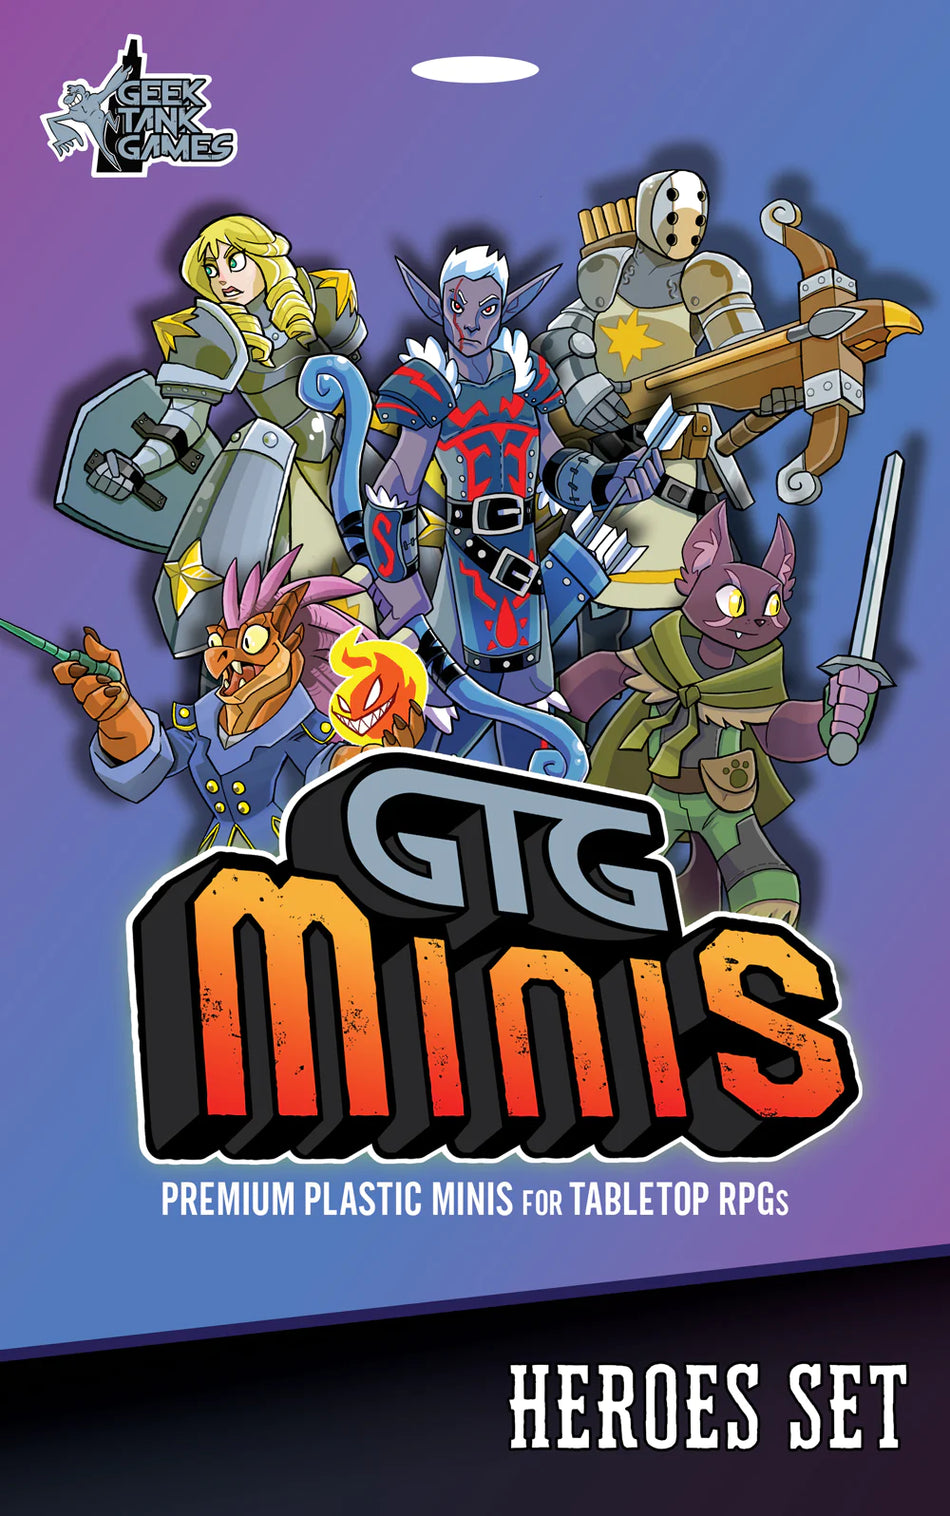 GTG Minis: Heroes Set